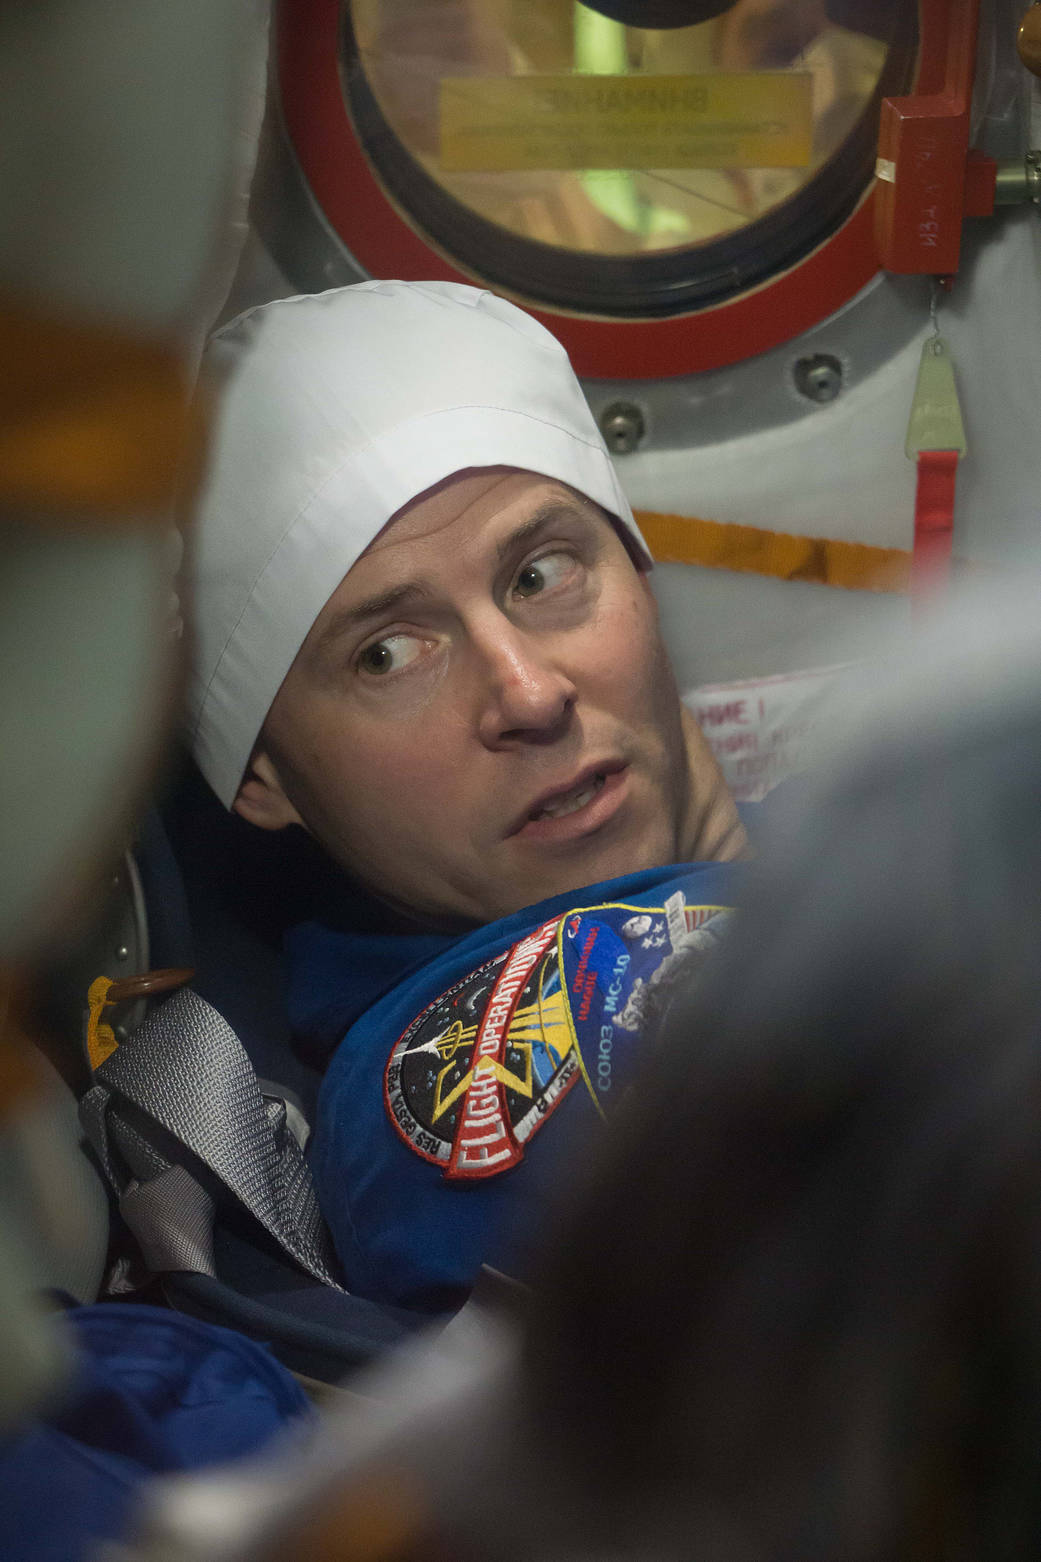 Expedition 57 crew member Nick Hague is seen in the Soyuz MS-10 spacecraft